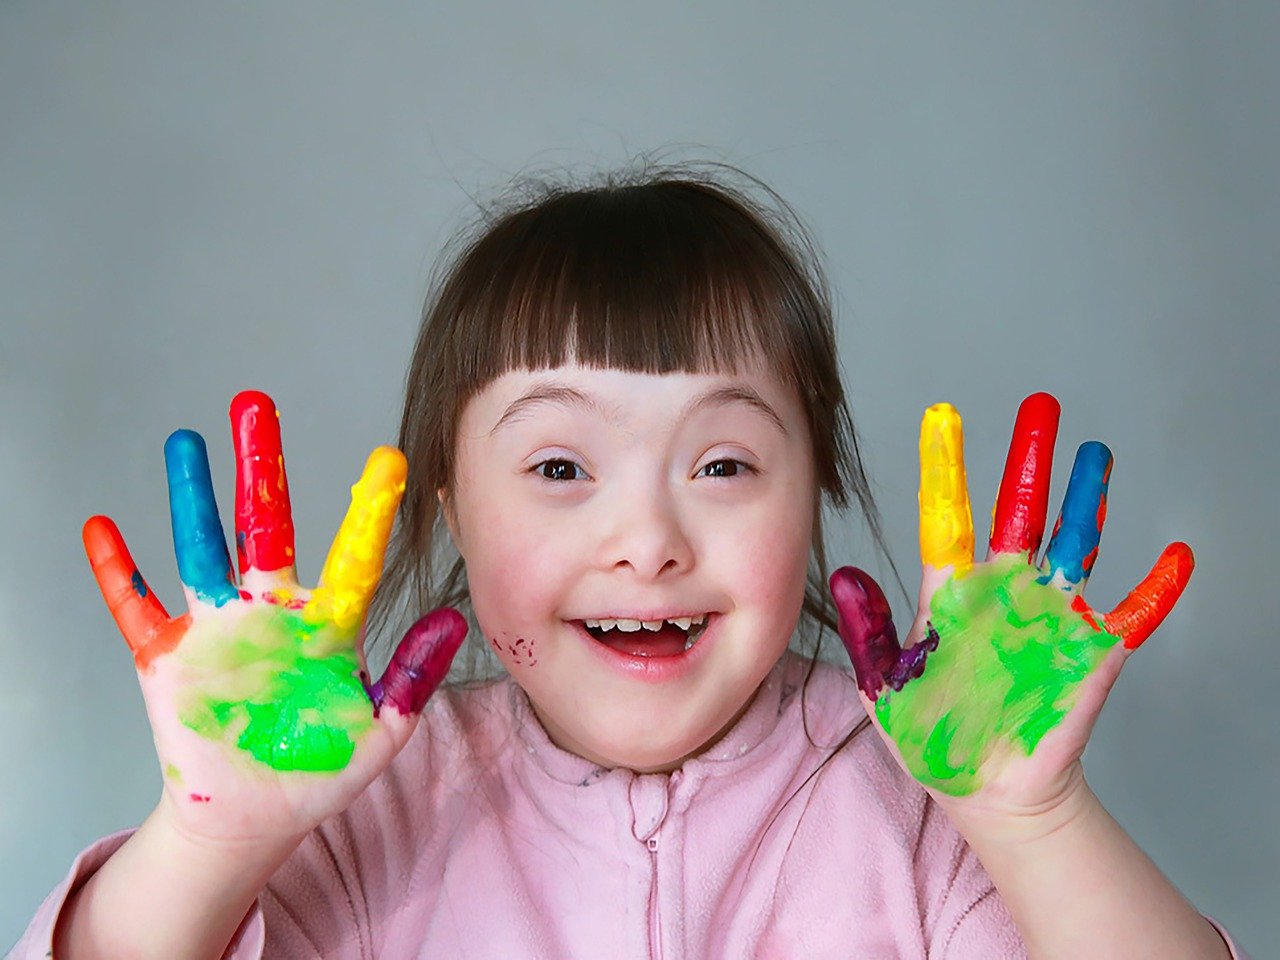 Verstandelijk beperkt meisje dat haar handen laat zien, die met kleurrijke verf bedekt zijn.